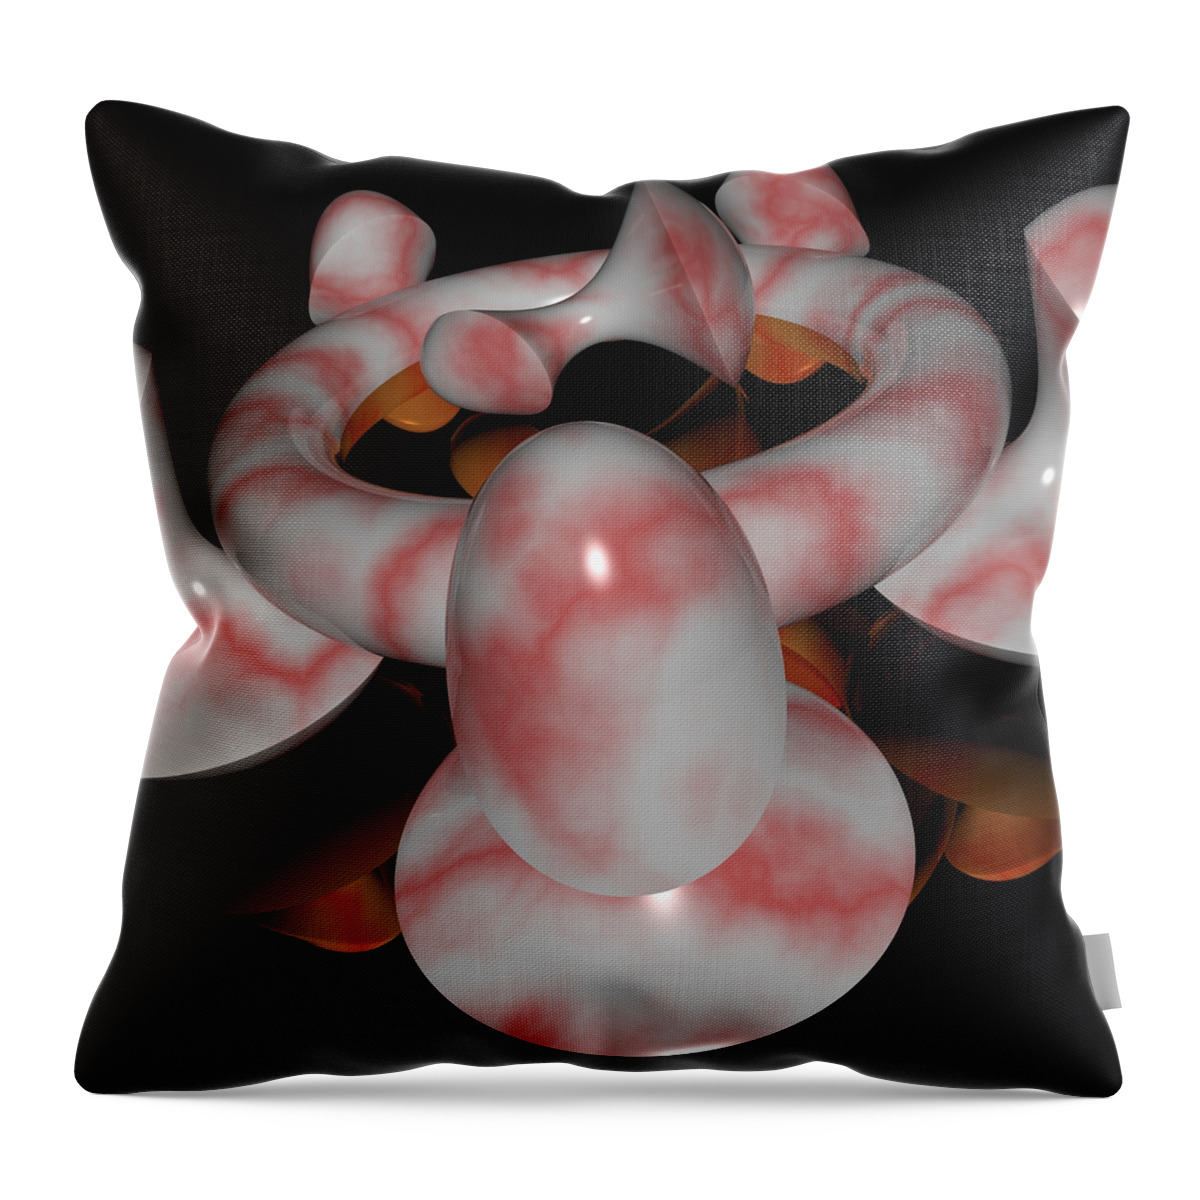  Throw Pillow featuring the digital art R 007 B by Rolf Bertram